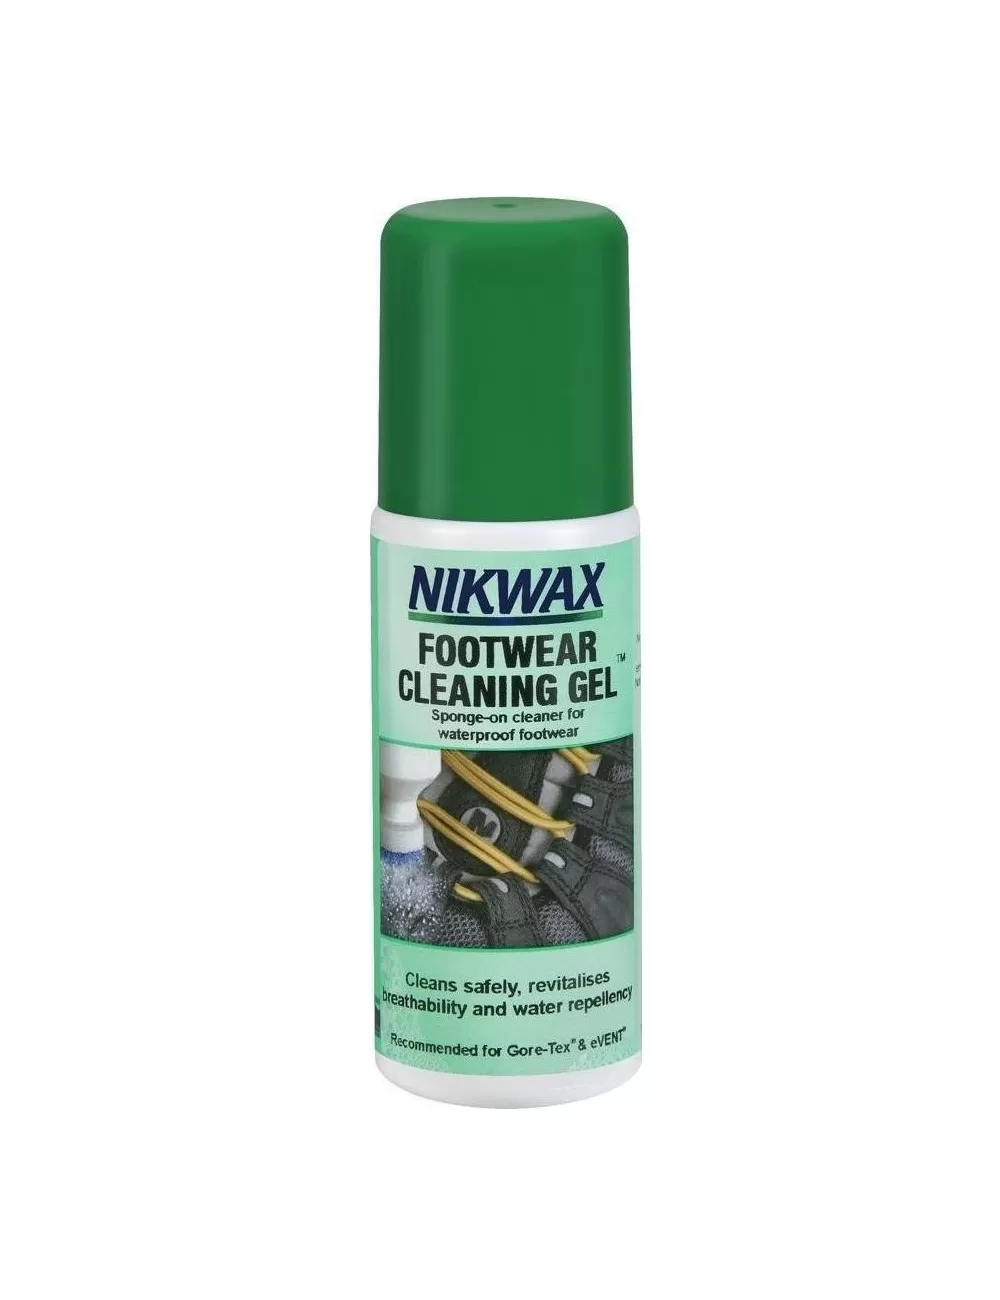 Środek czyszczący Nikwax Footwear Cleaning Gel 125 ml